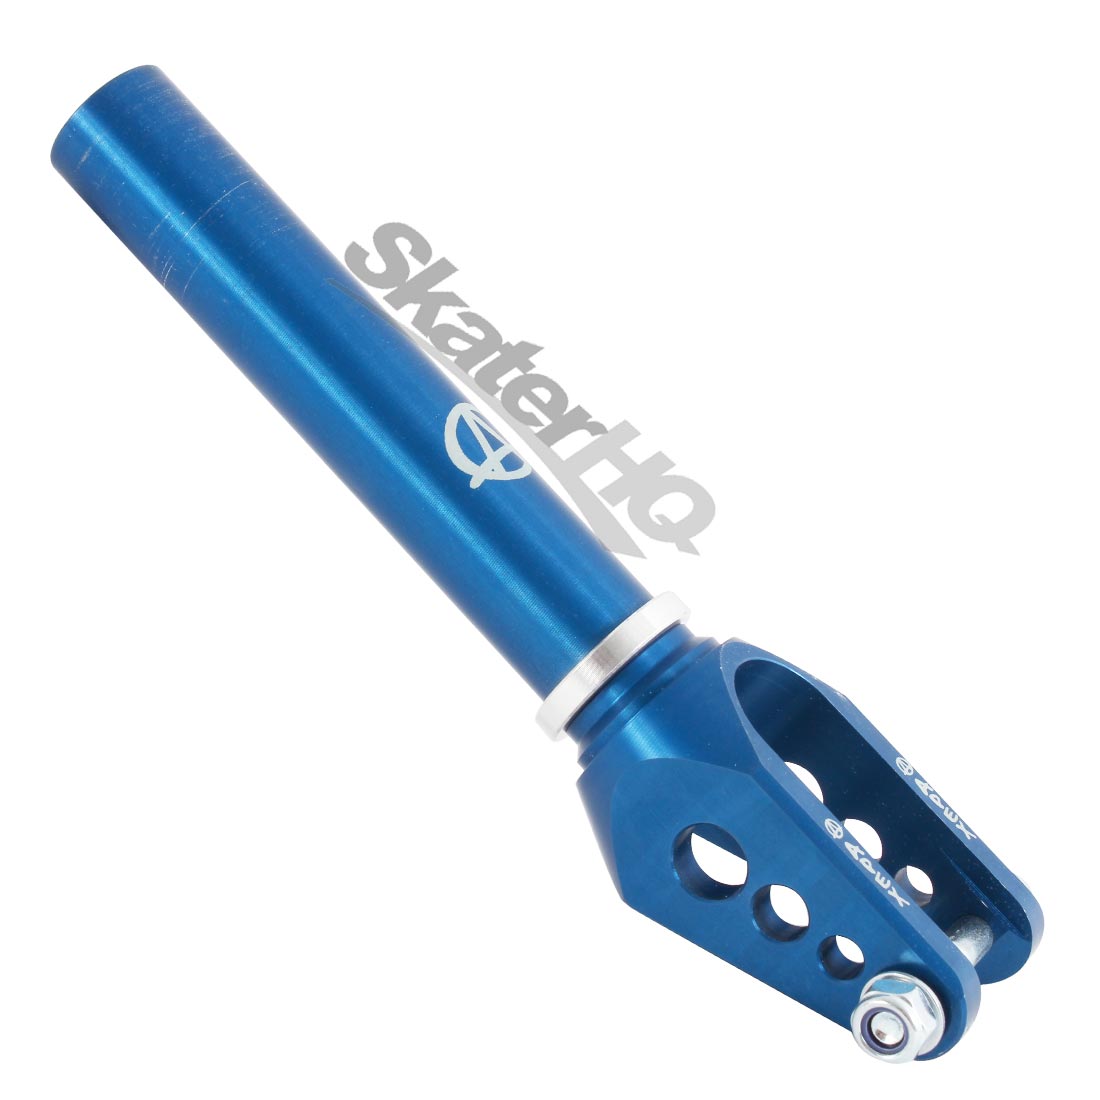 Apex Pro Infinity Std Fork - Blue Scooter Forks